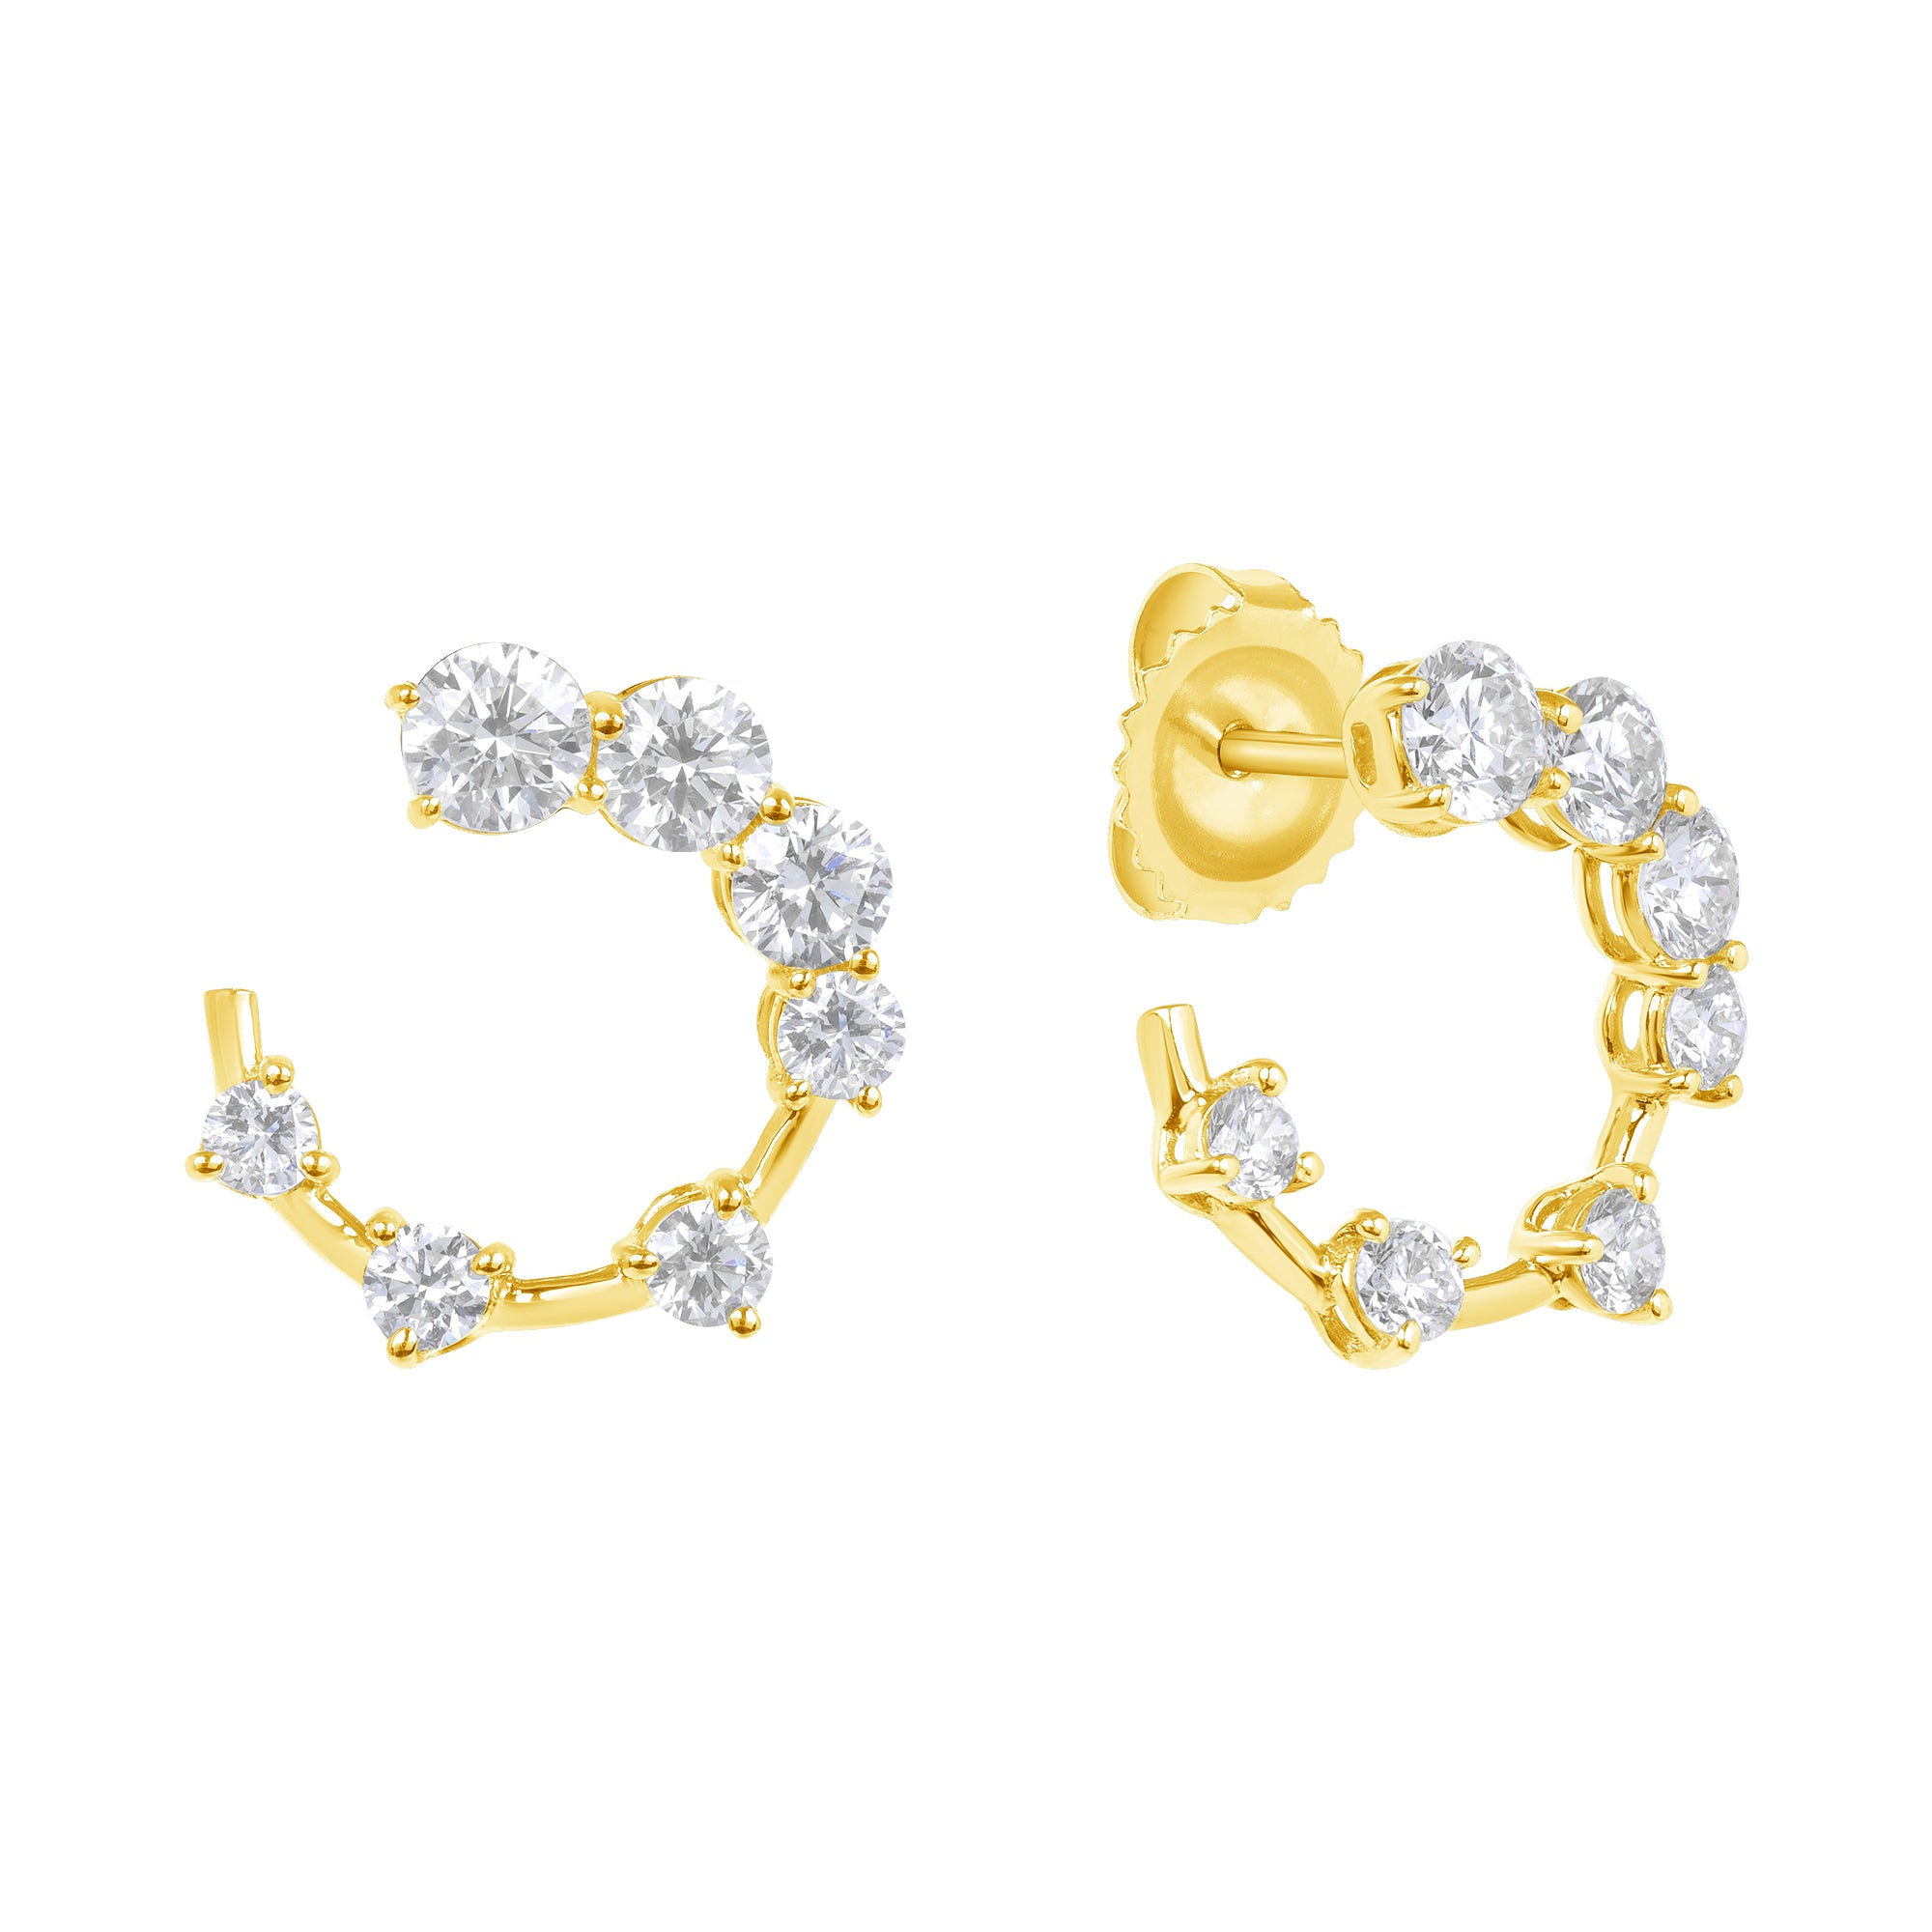 Round Brilliant Cut Diamond Open Hoop Swirl Earrings in 18K Yellow Gold